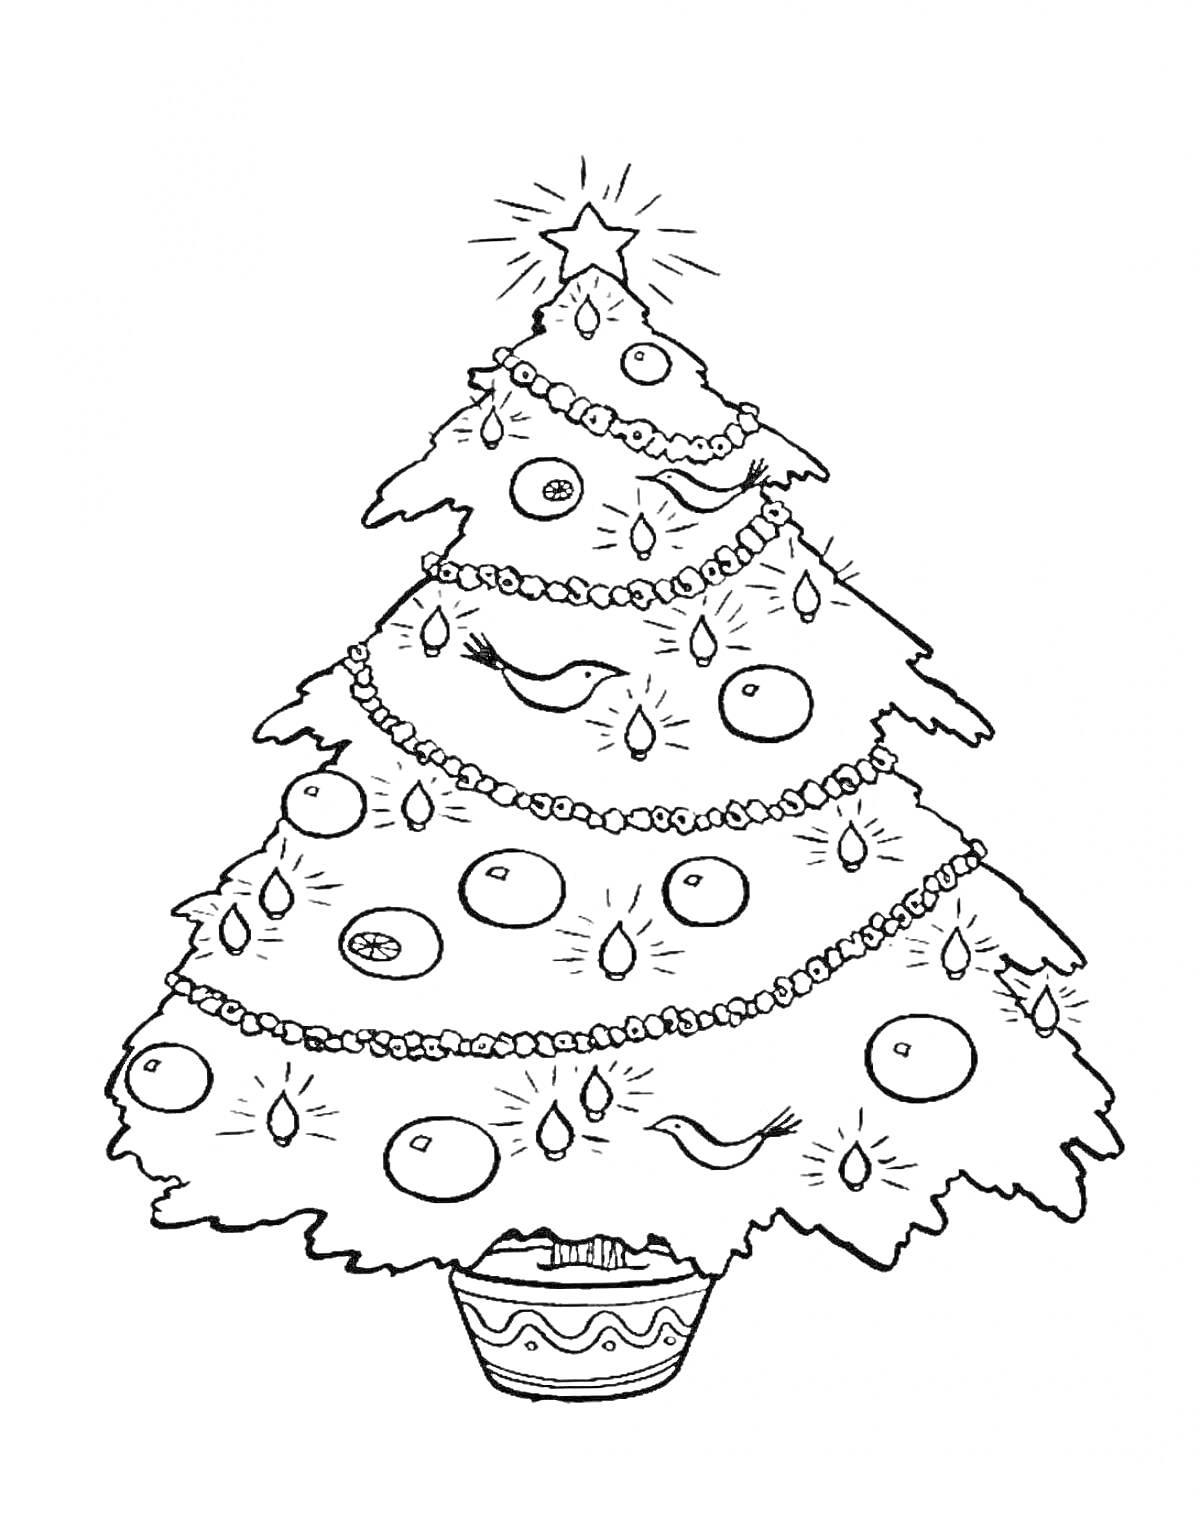 Раскраска Рождественская елка с украшениями, гирляндами, шарами и звездой на вершине в вазоне